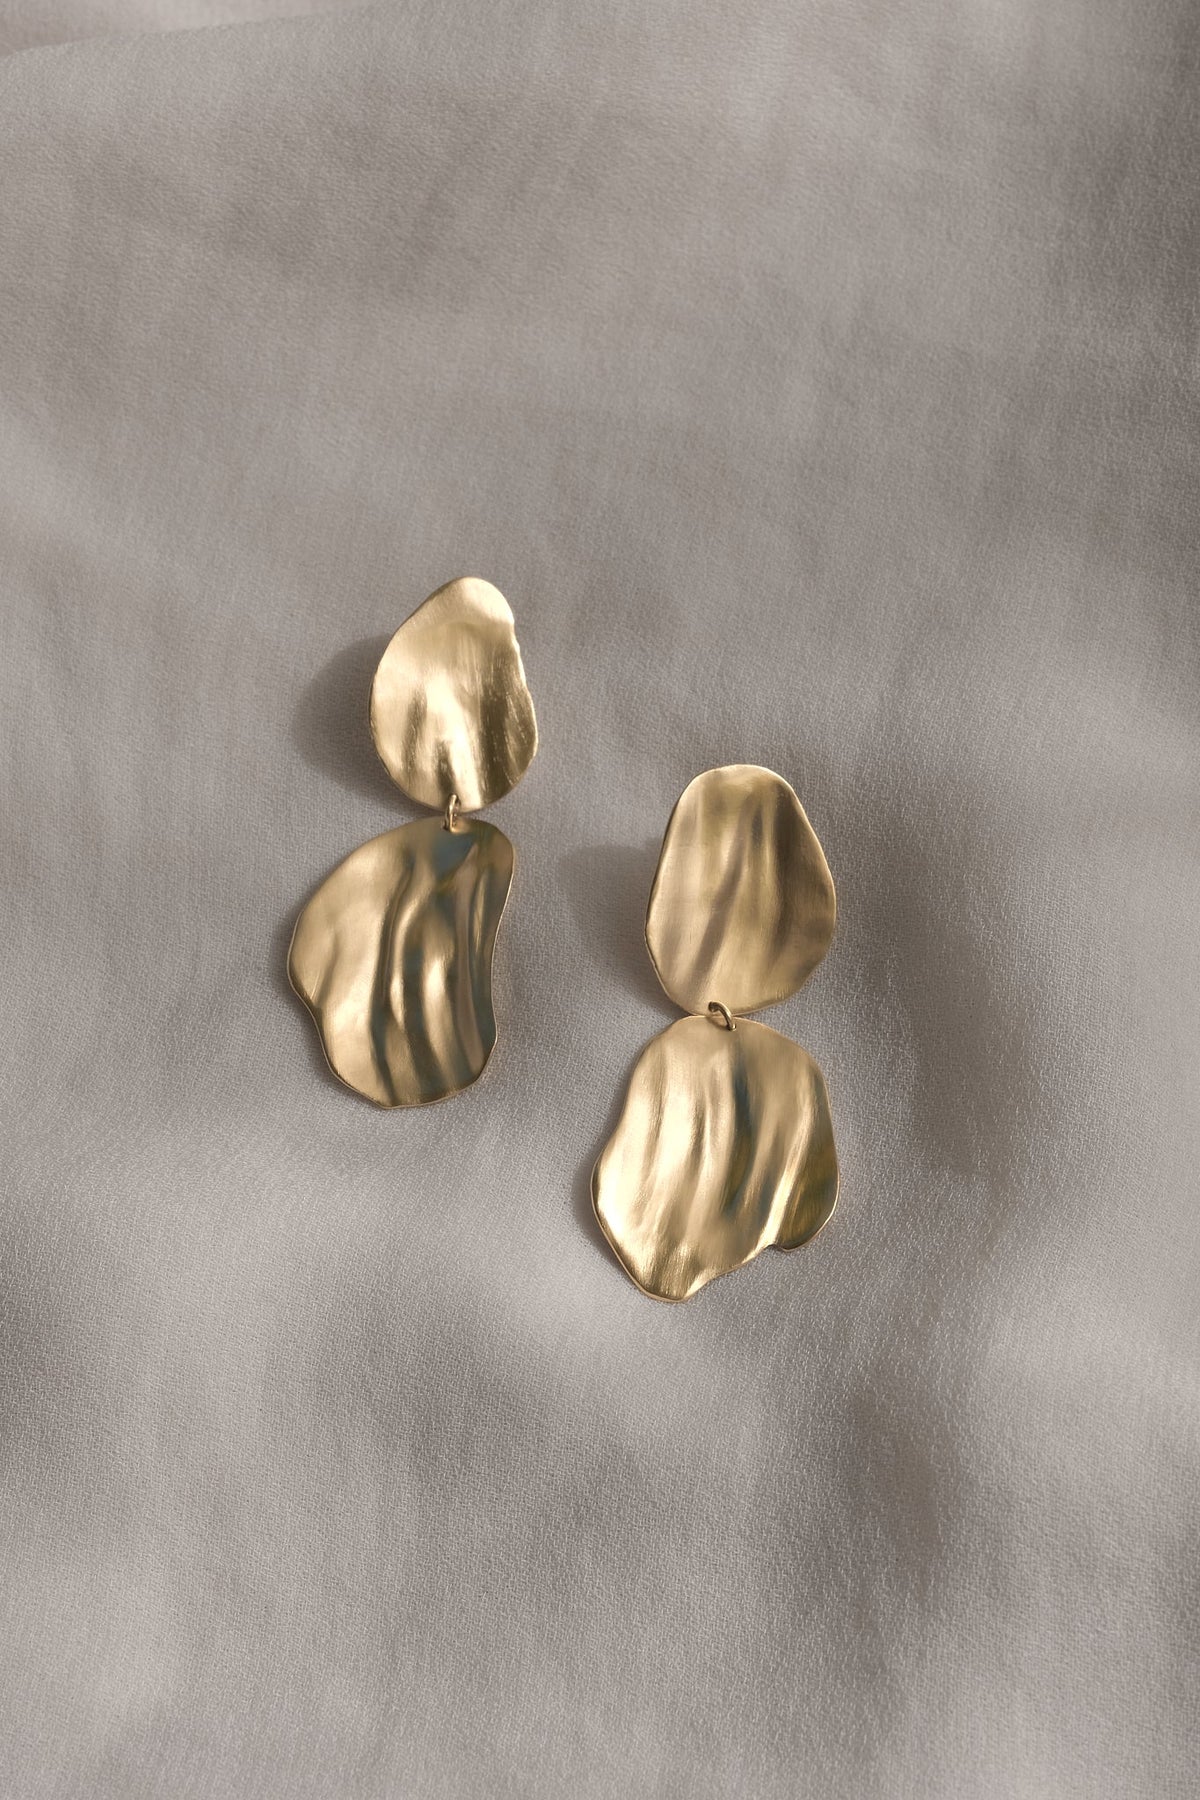 EIRA duo earrings 18k gold